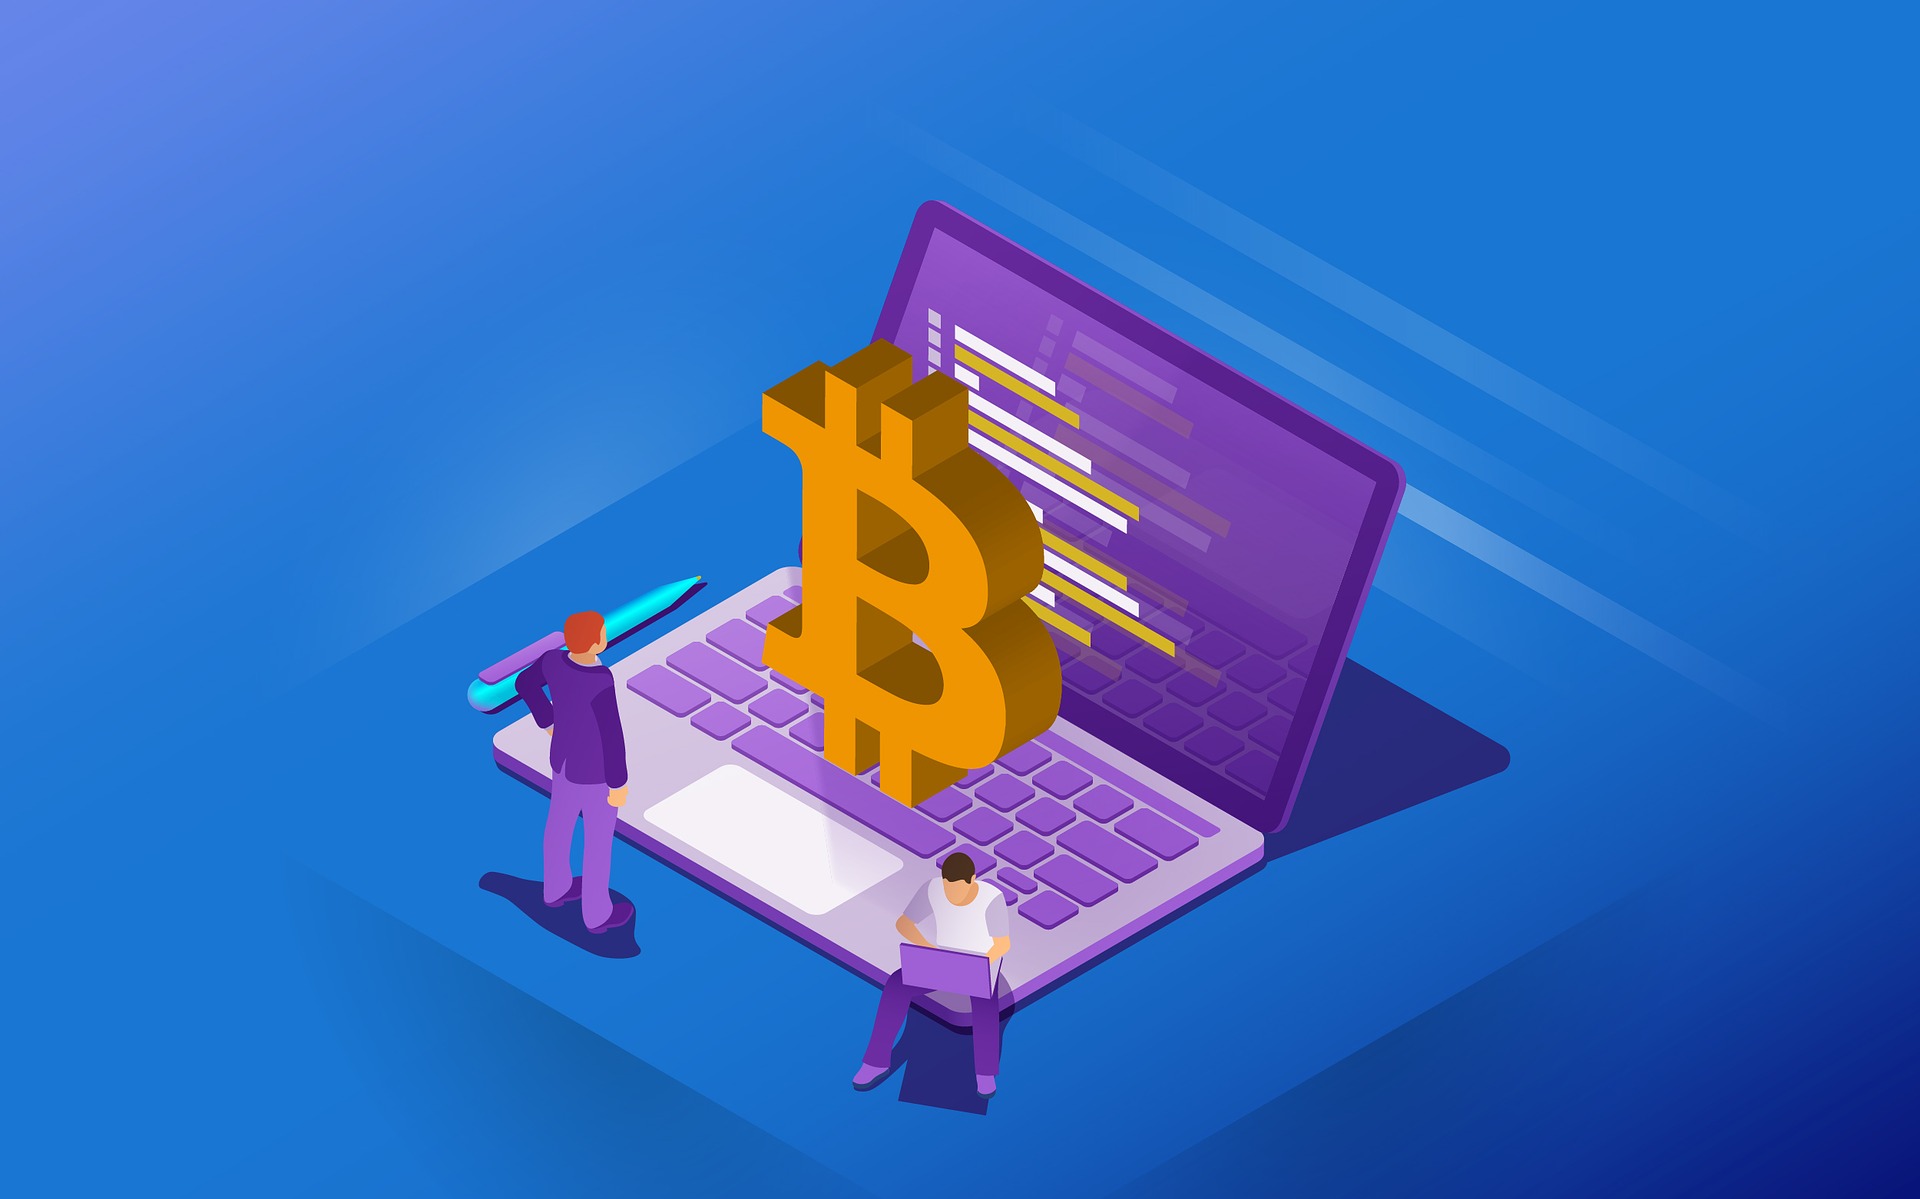 Hogyan tudok bitcoint venni és hogyan lehet bitcoint bányászni?